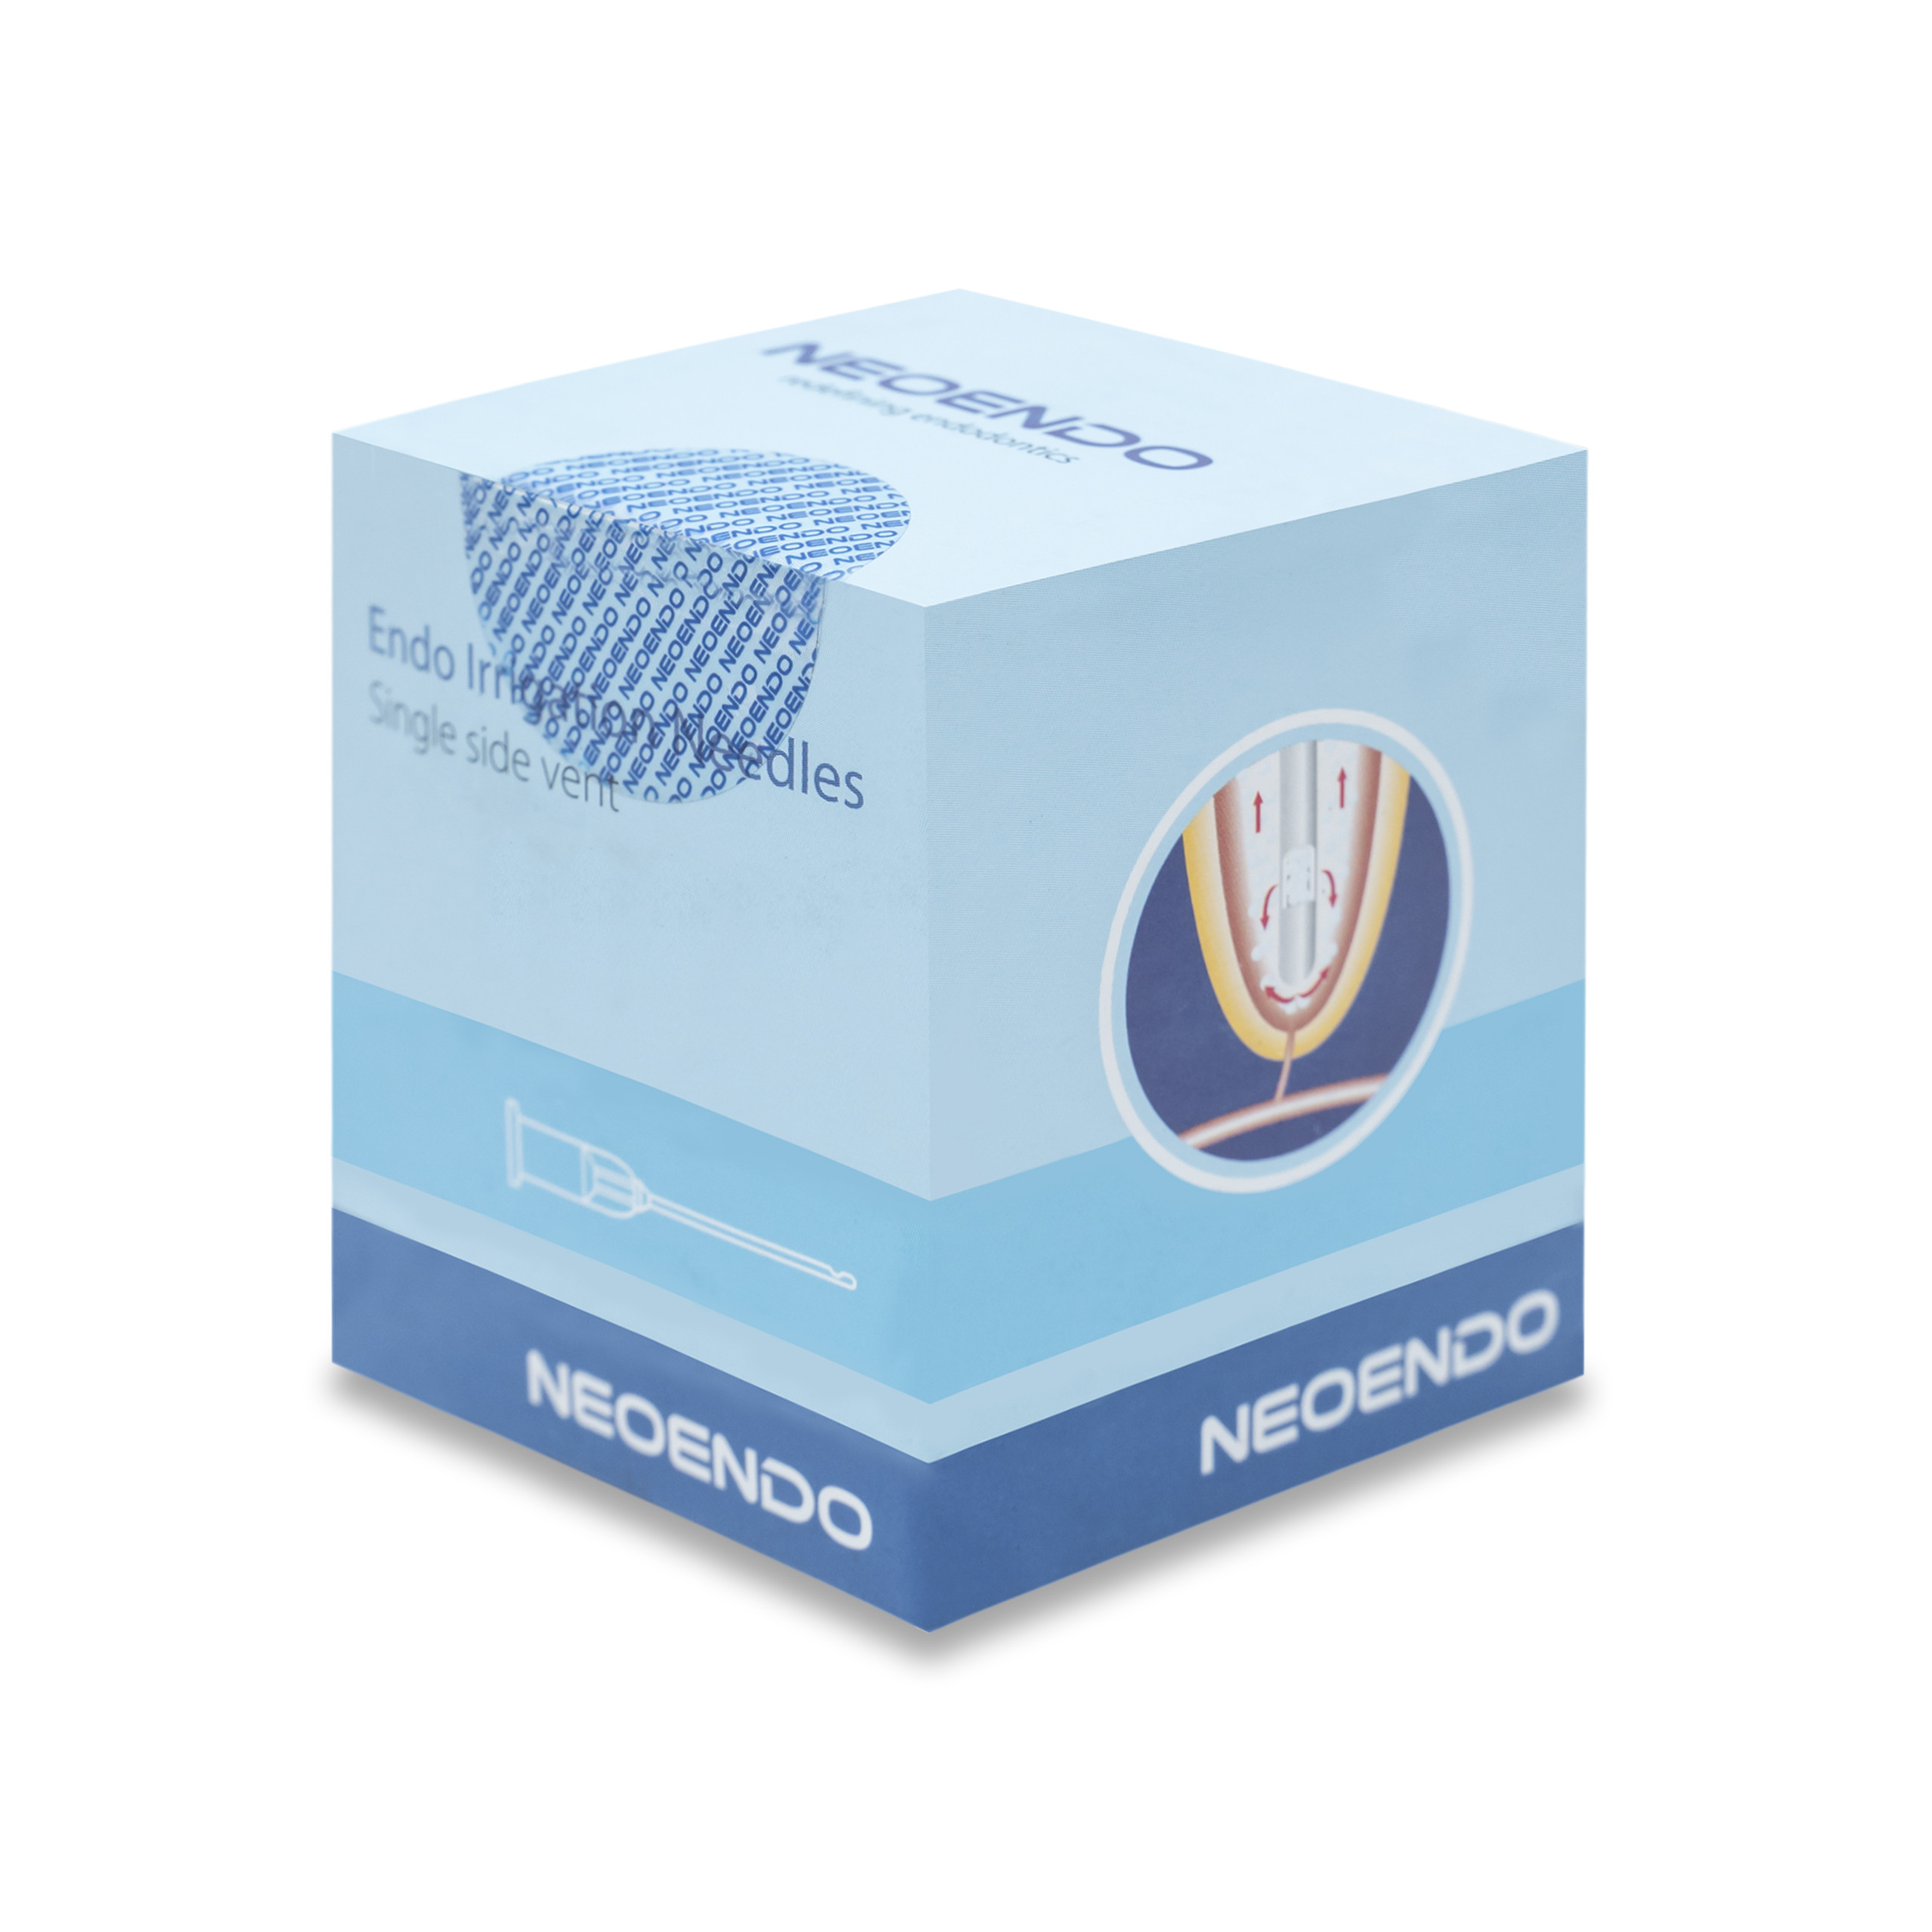 Neoendo Endo Irrigation Needles Double  Side Vent 30 Gauge Length 25mm 50pcs